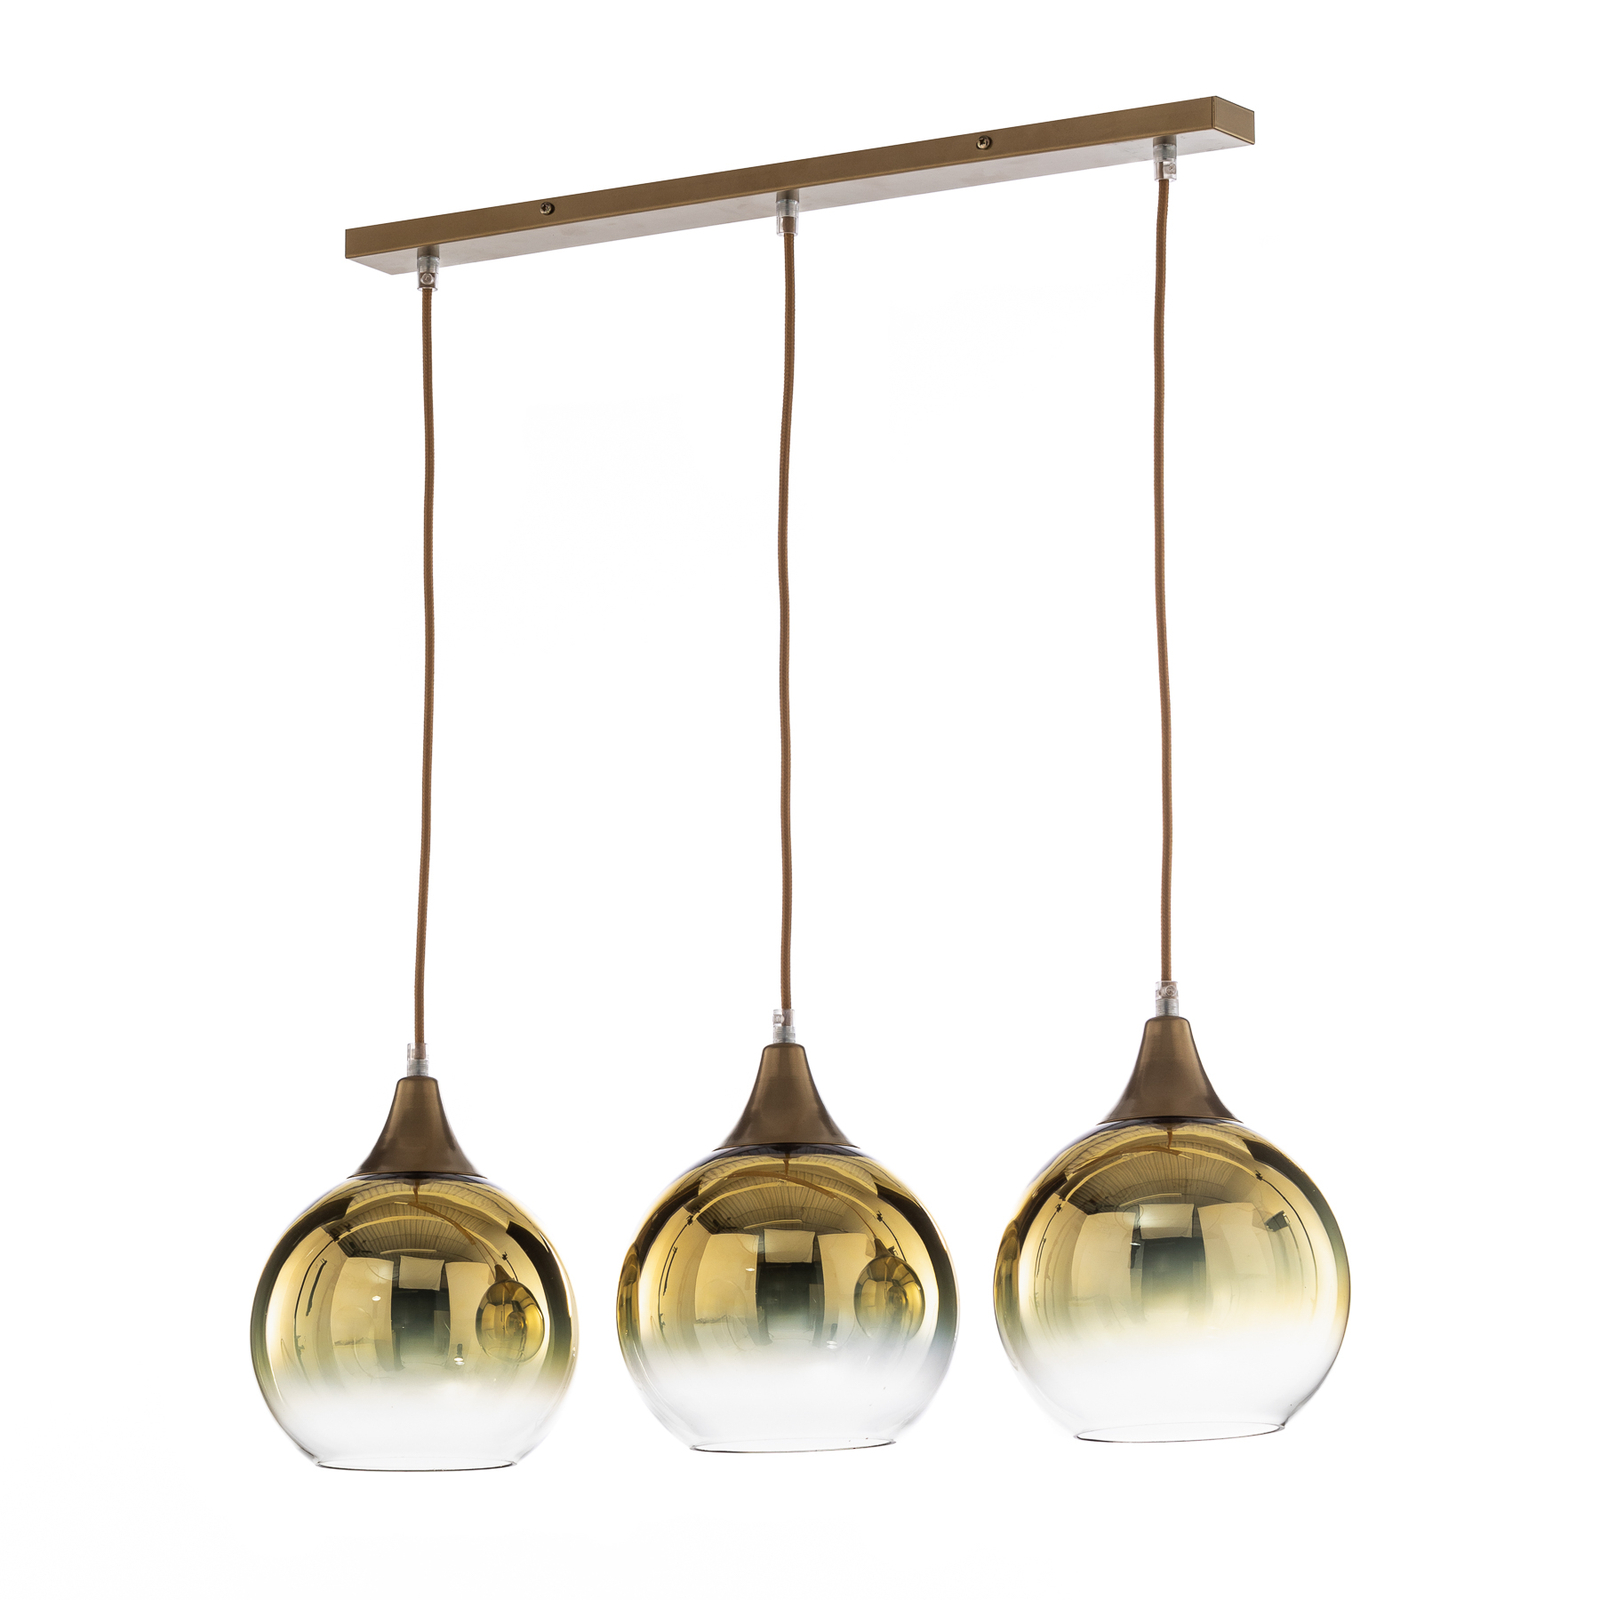 Monte pendant light, 3-bulb, linear, gold